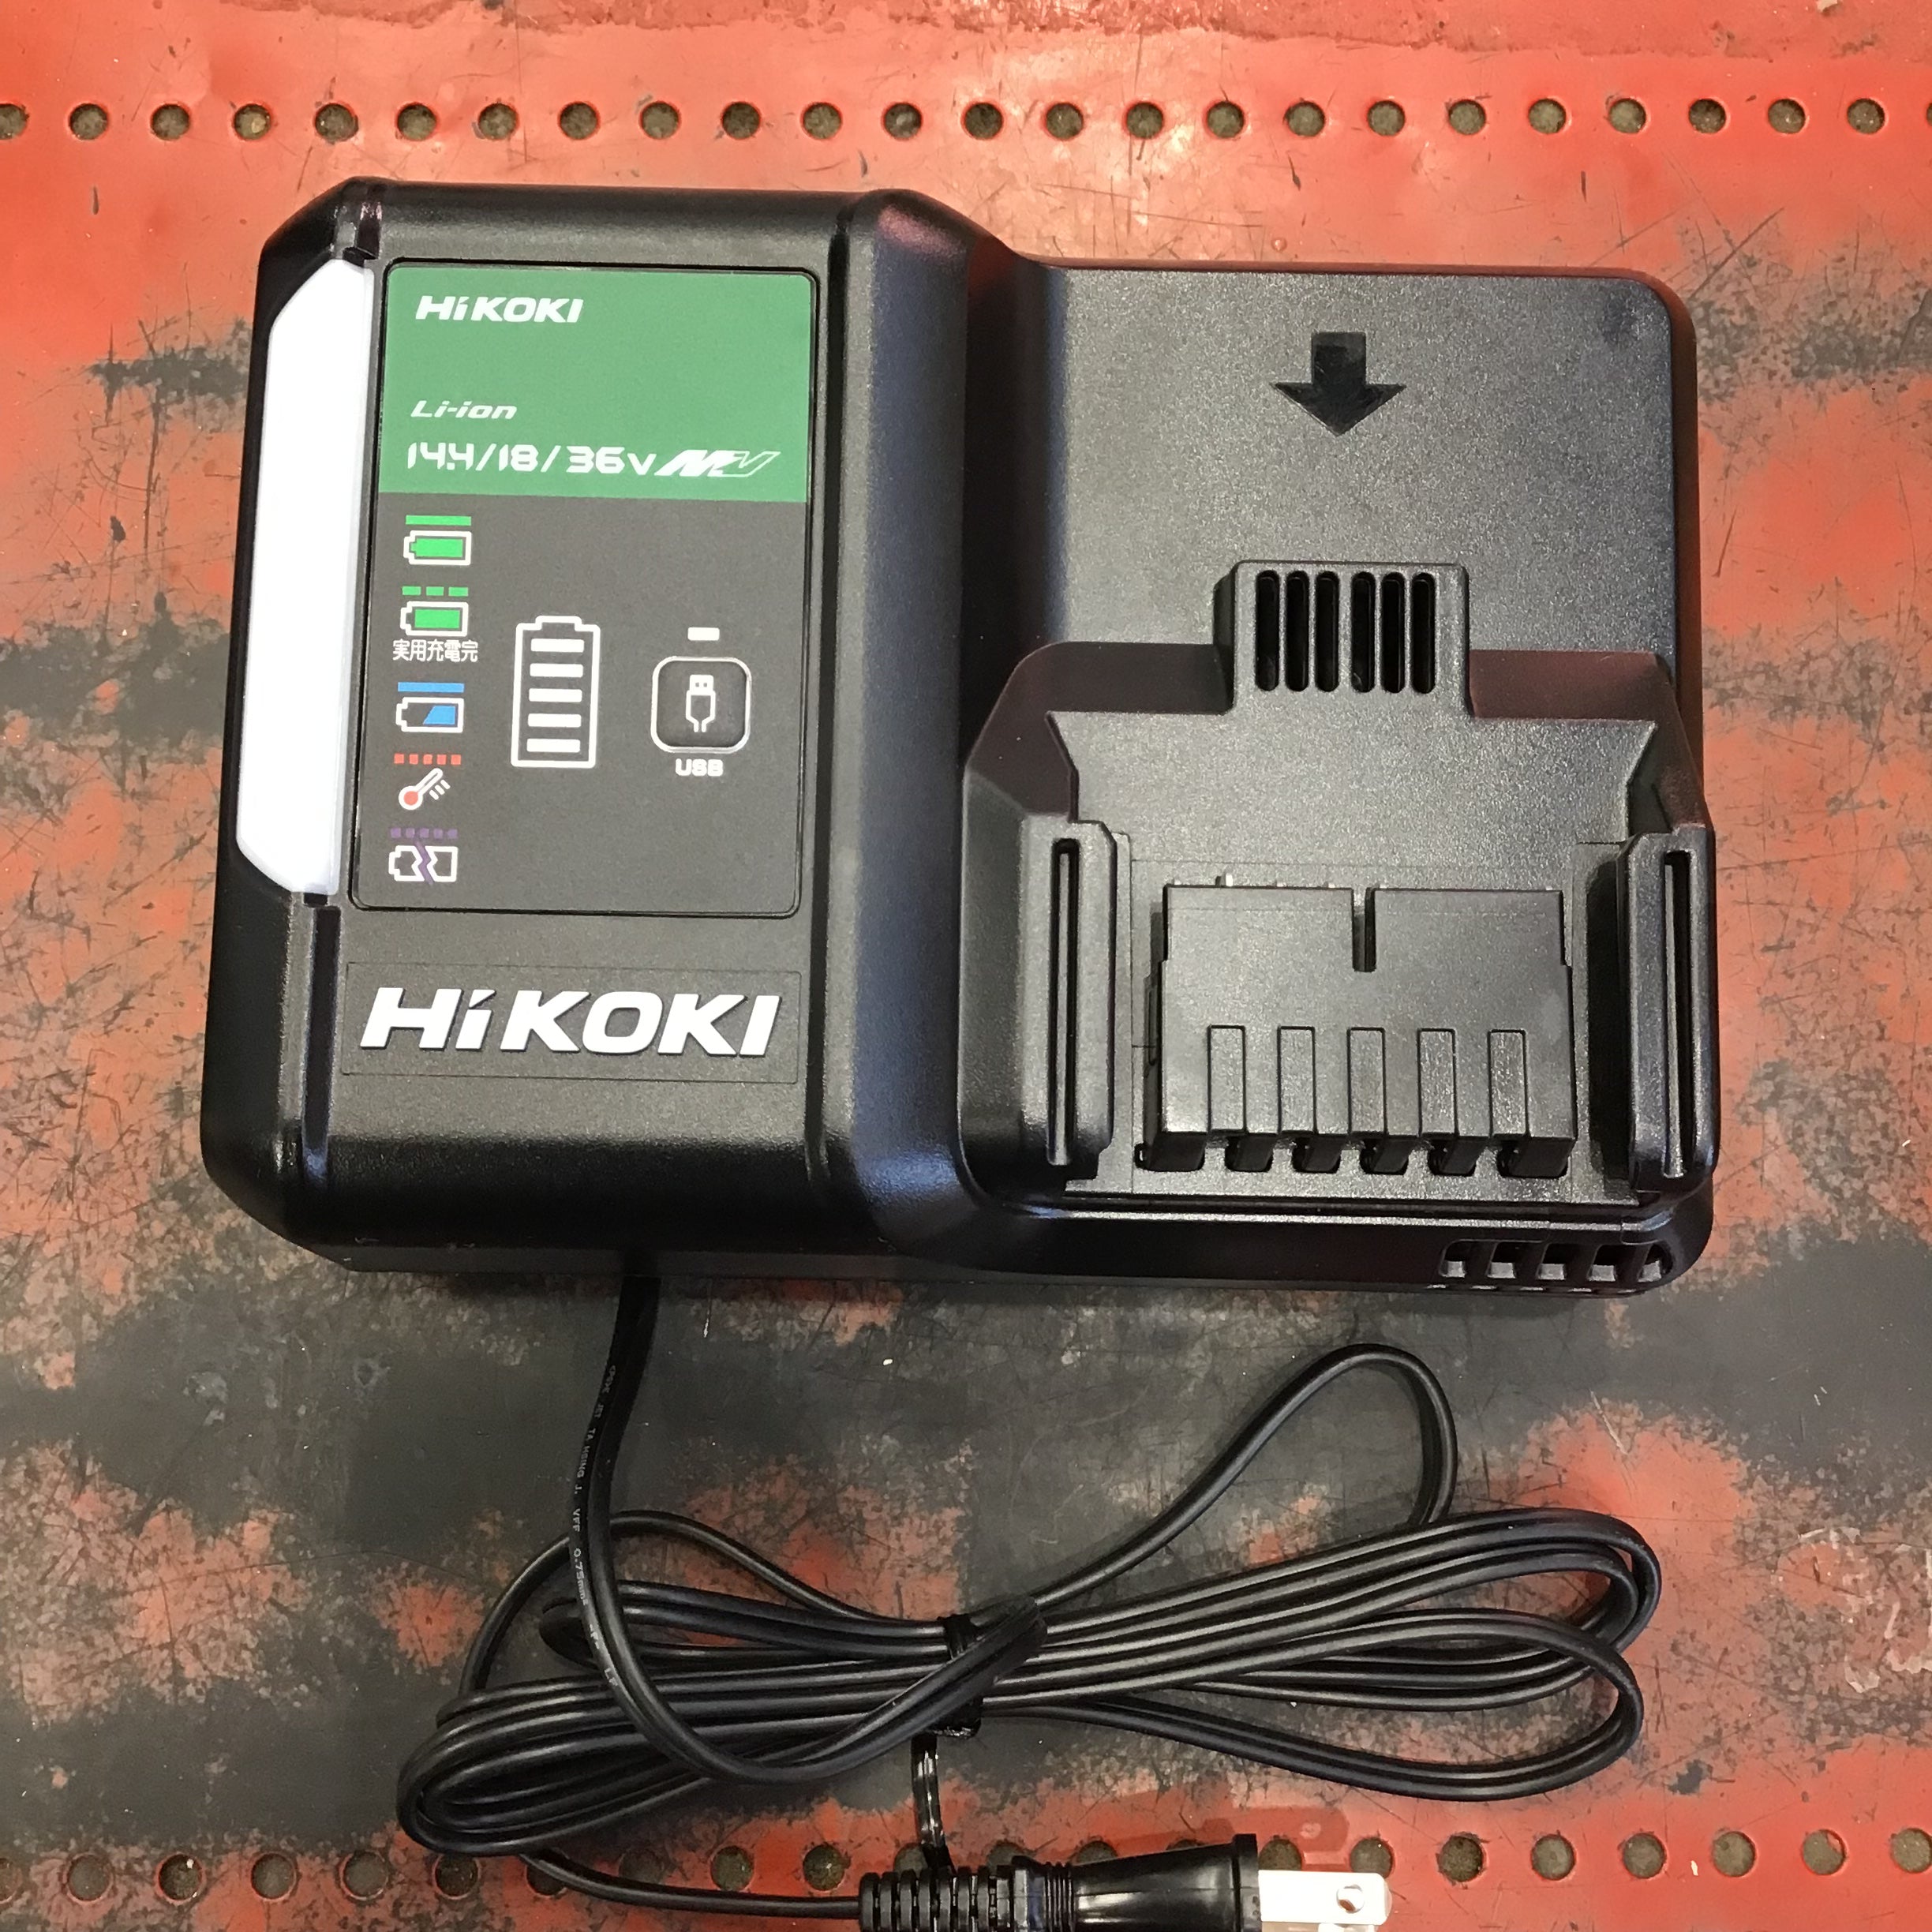 HiKOKI(ハイコーキ) 36V コードレスディスクグラインダ スライド